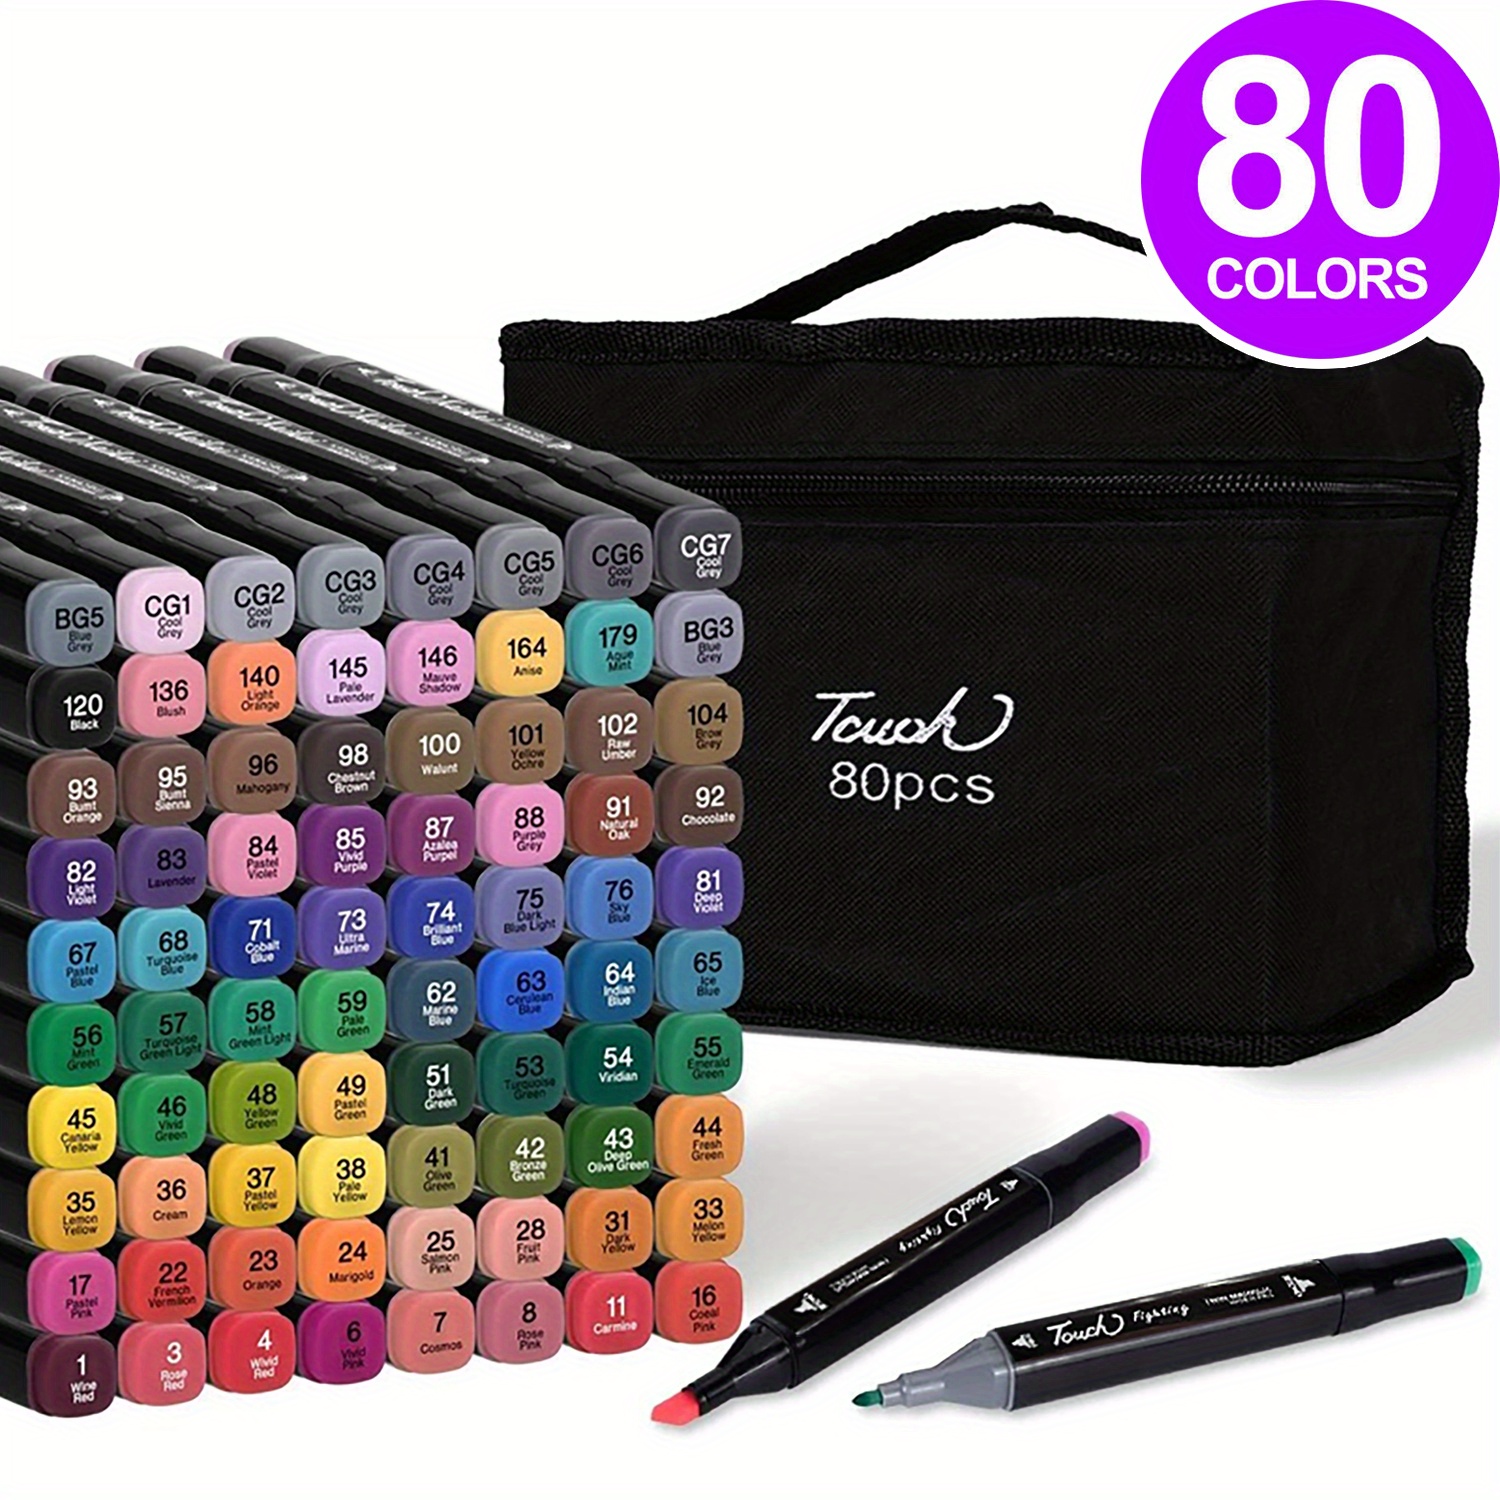  ACUOTN Anime Pens 6pcs Colors Pens Fluorescent Pen School  Supplies (san-fluo pens) : Office Products